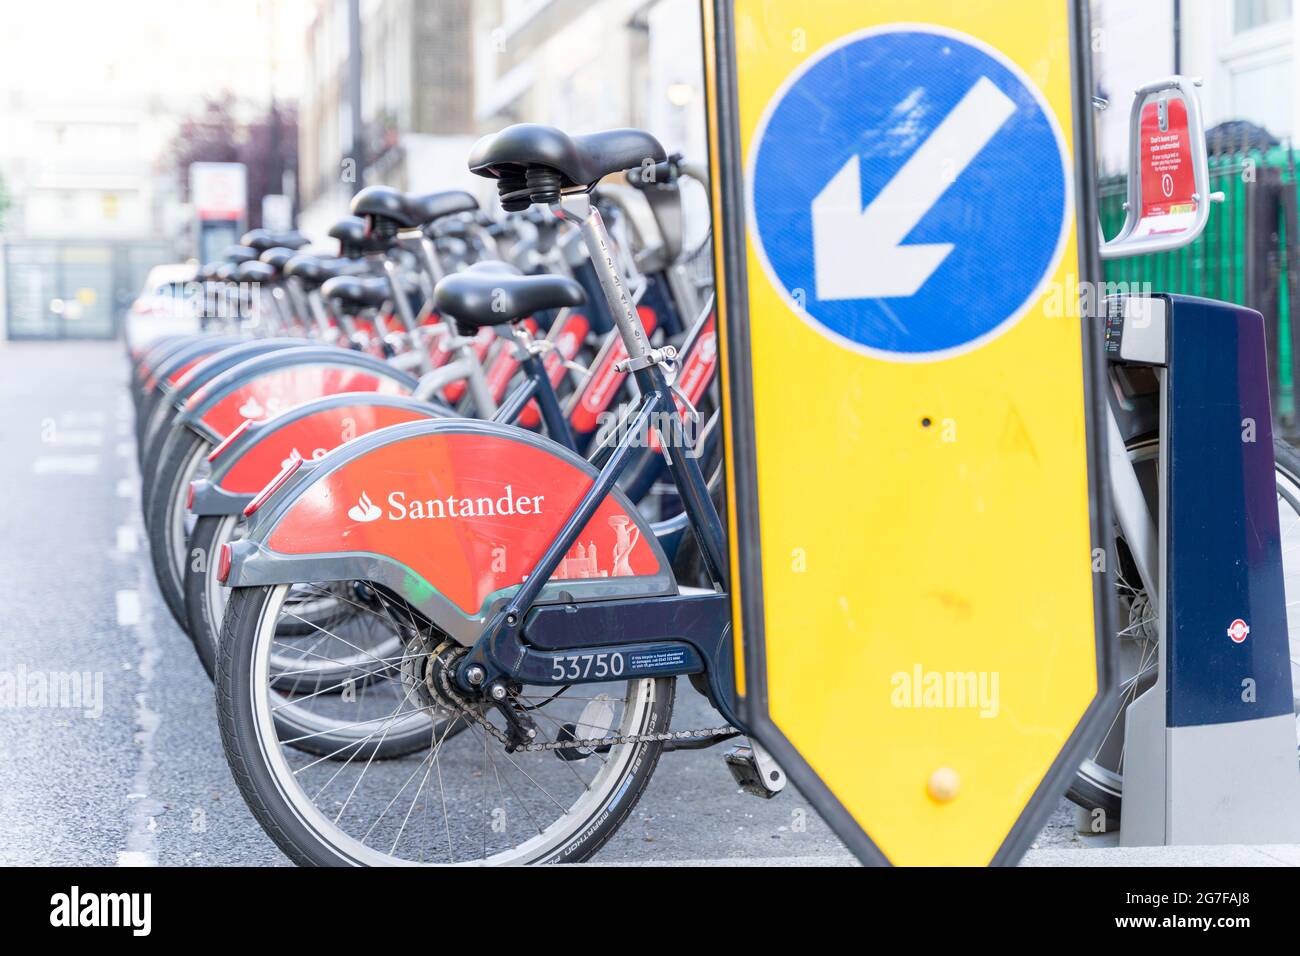 Station d'accueil pour vélos Santander dans la rue de Londres Banque D'Images